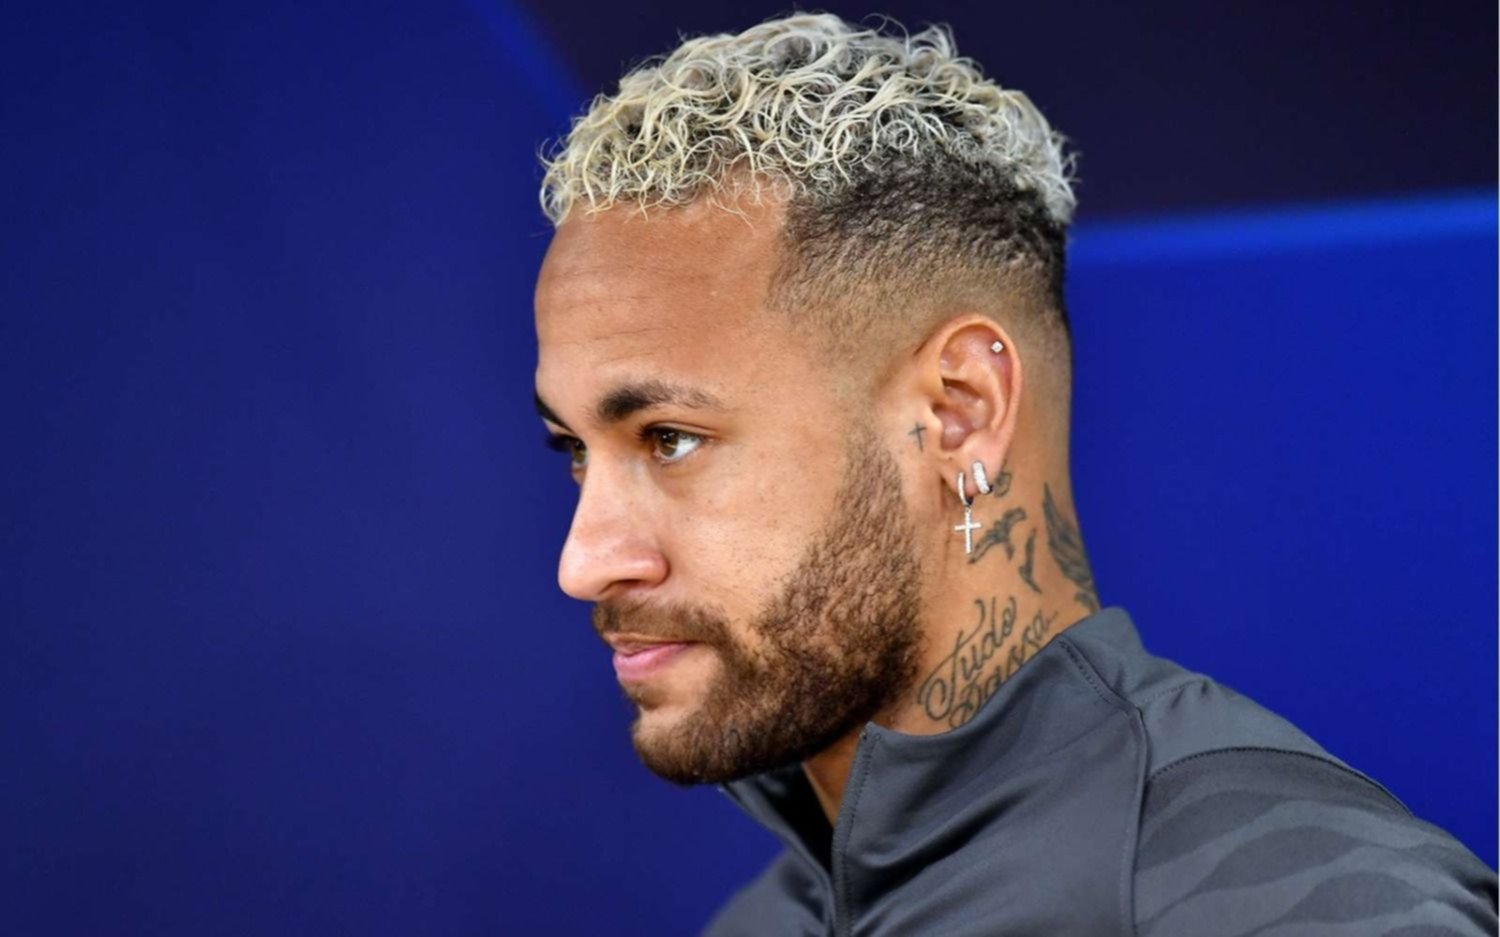 Neymar y el apoyo a sus compañeros tras confirmarse su lesión: "Felicitaciones equipo, primer paso dado "